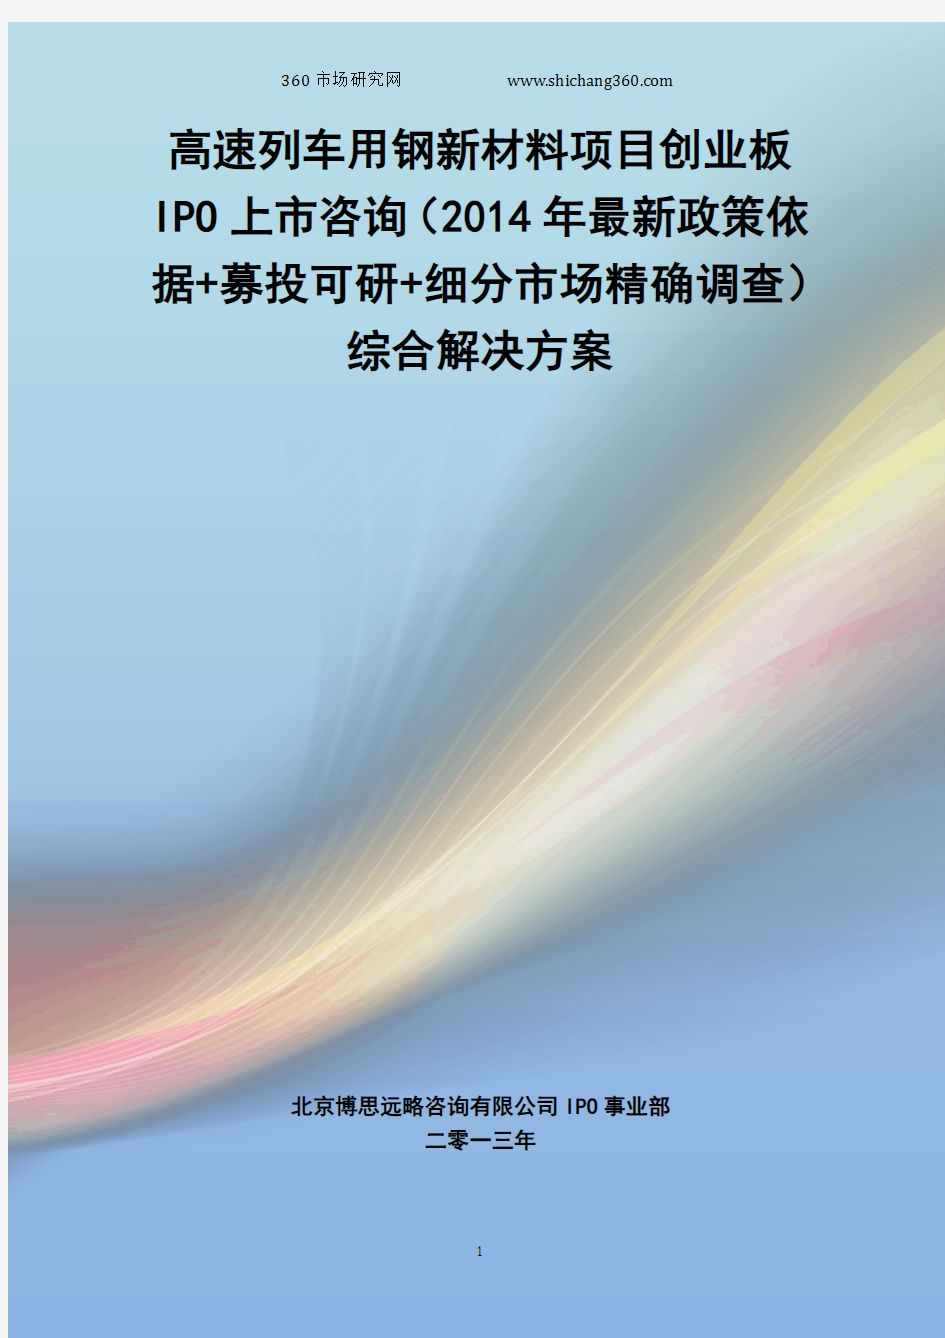 高速列车用钢新材料IPO上市咨询(2014年最新政策+募投可研+细分市场调查)综合解决方案